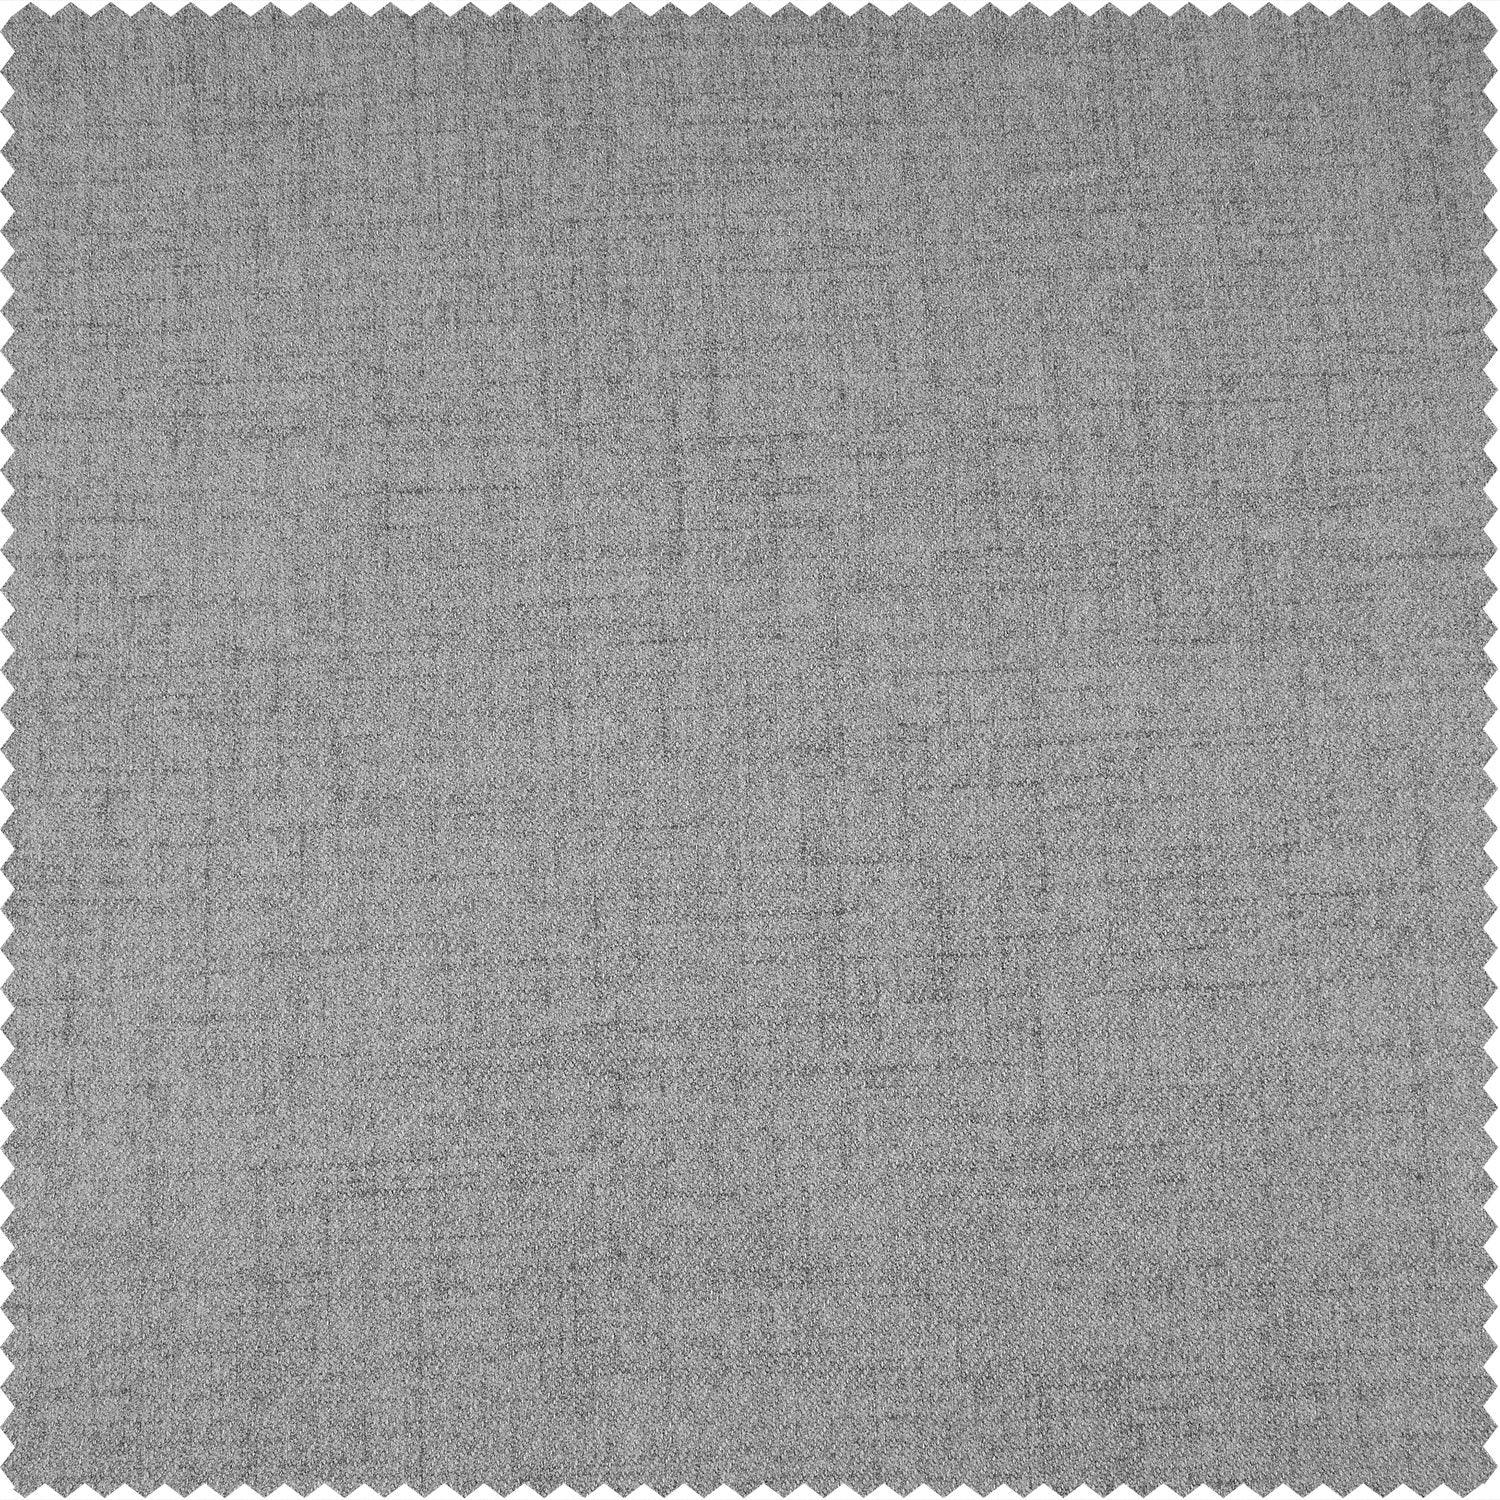 Steely Grey French Pleat Heathered Woolen Weave Room Darkening Curtain